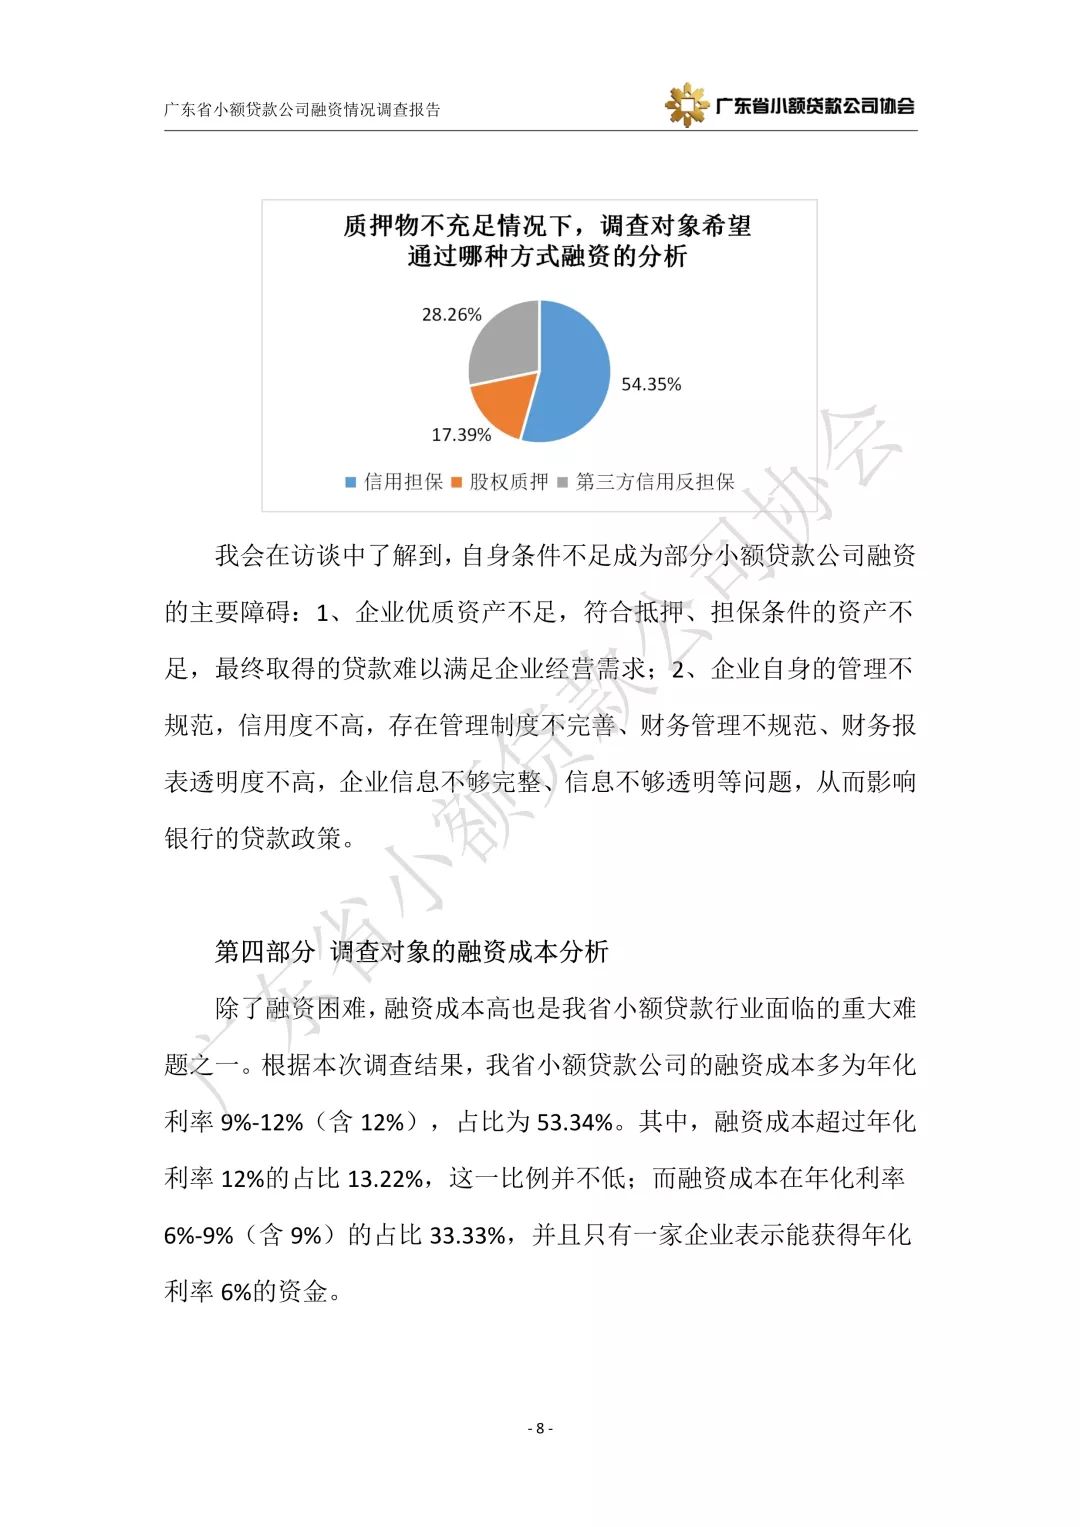 【重磅发布】广东省小额贷款公司融资情况调查报告